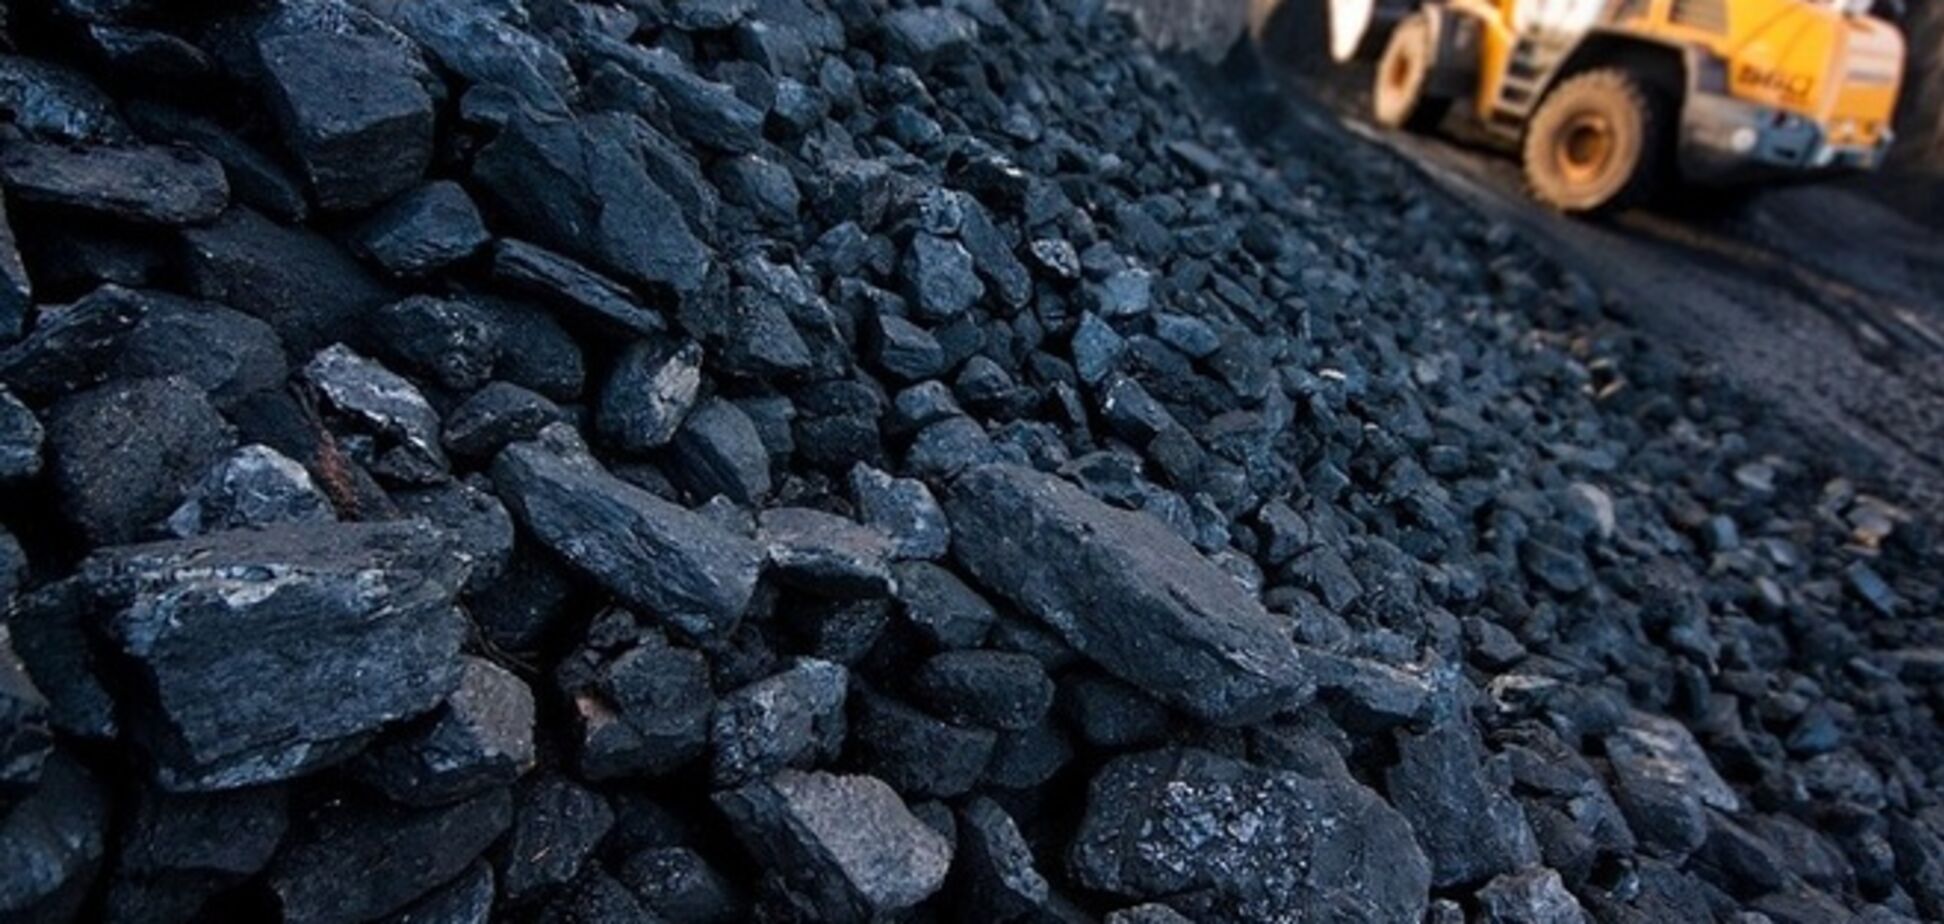 Военные умудрились купить некачественный уголь на 27 млн по завышенной цене